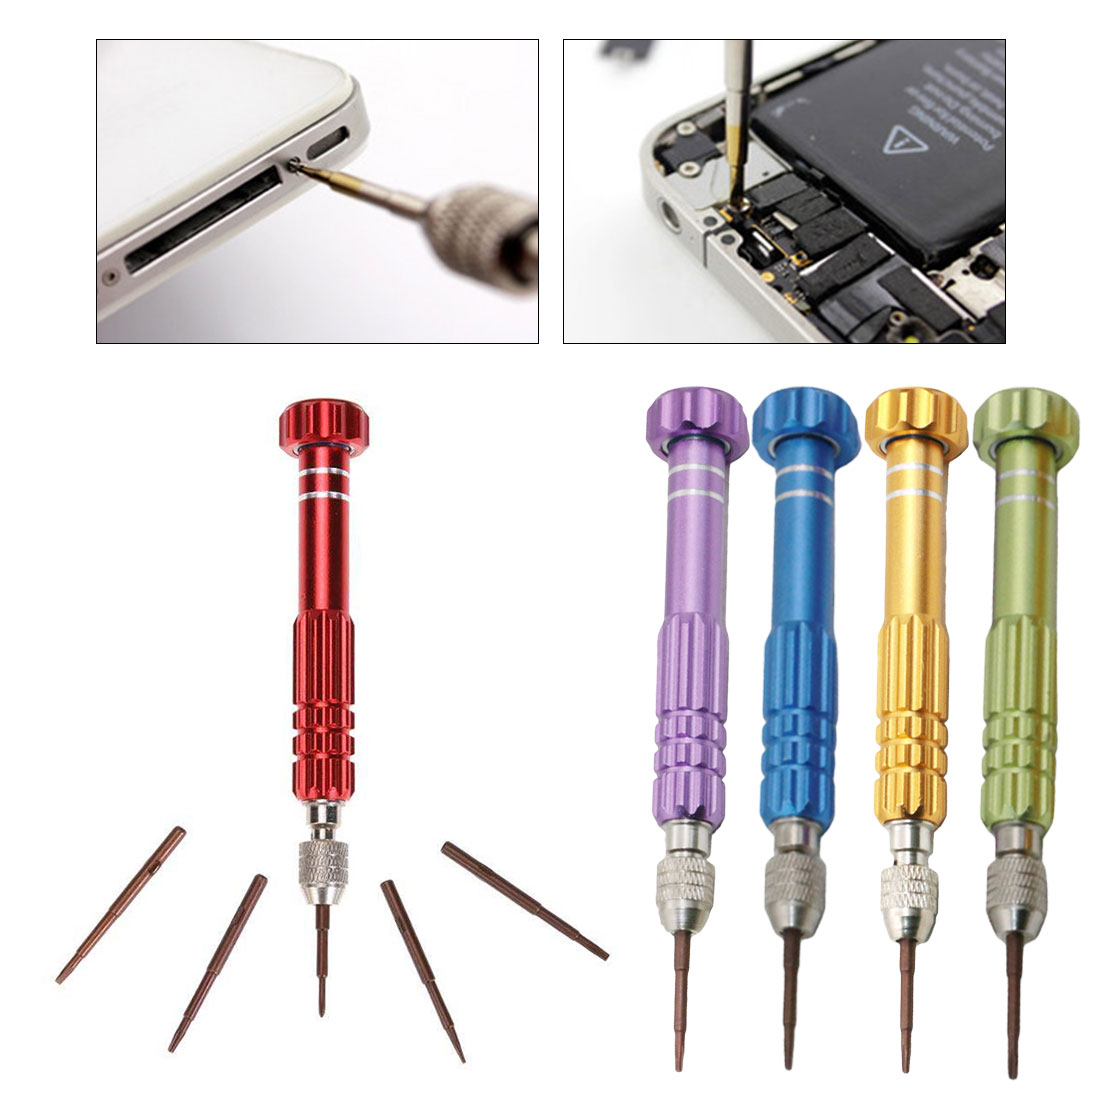 5 In 1 Repair Opening Magnetische Schroevendraaier Kit Set Voor Horloge Mobiele Telefoon Diy Demonteren Open Tool Precisie Schroevendraaiers